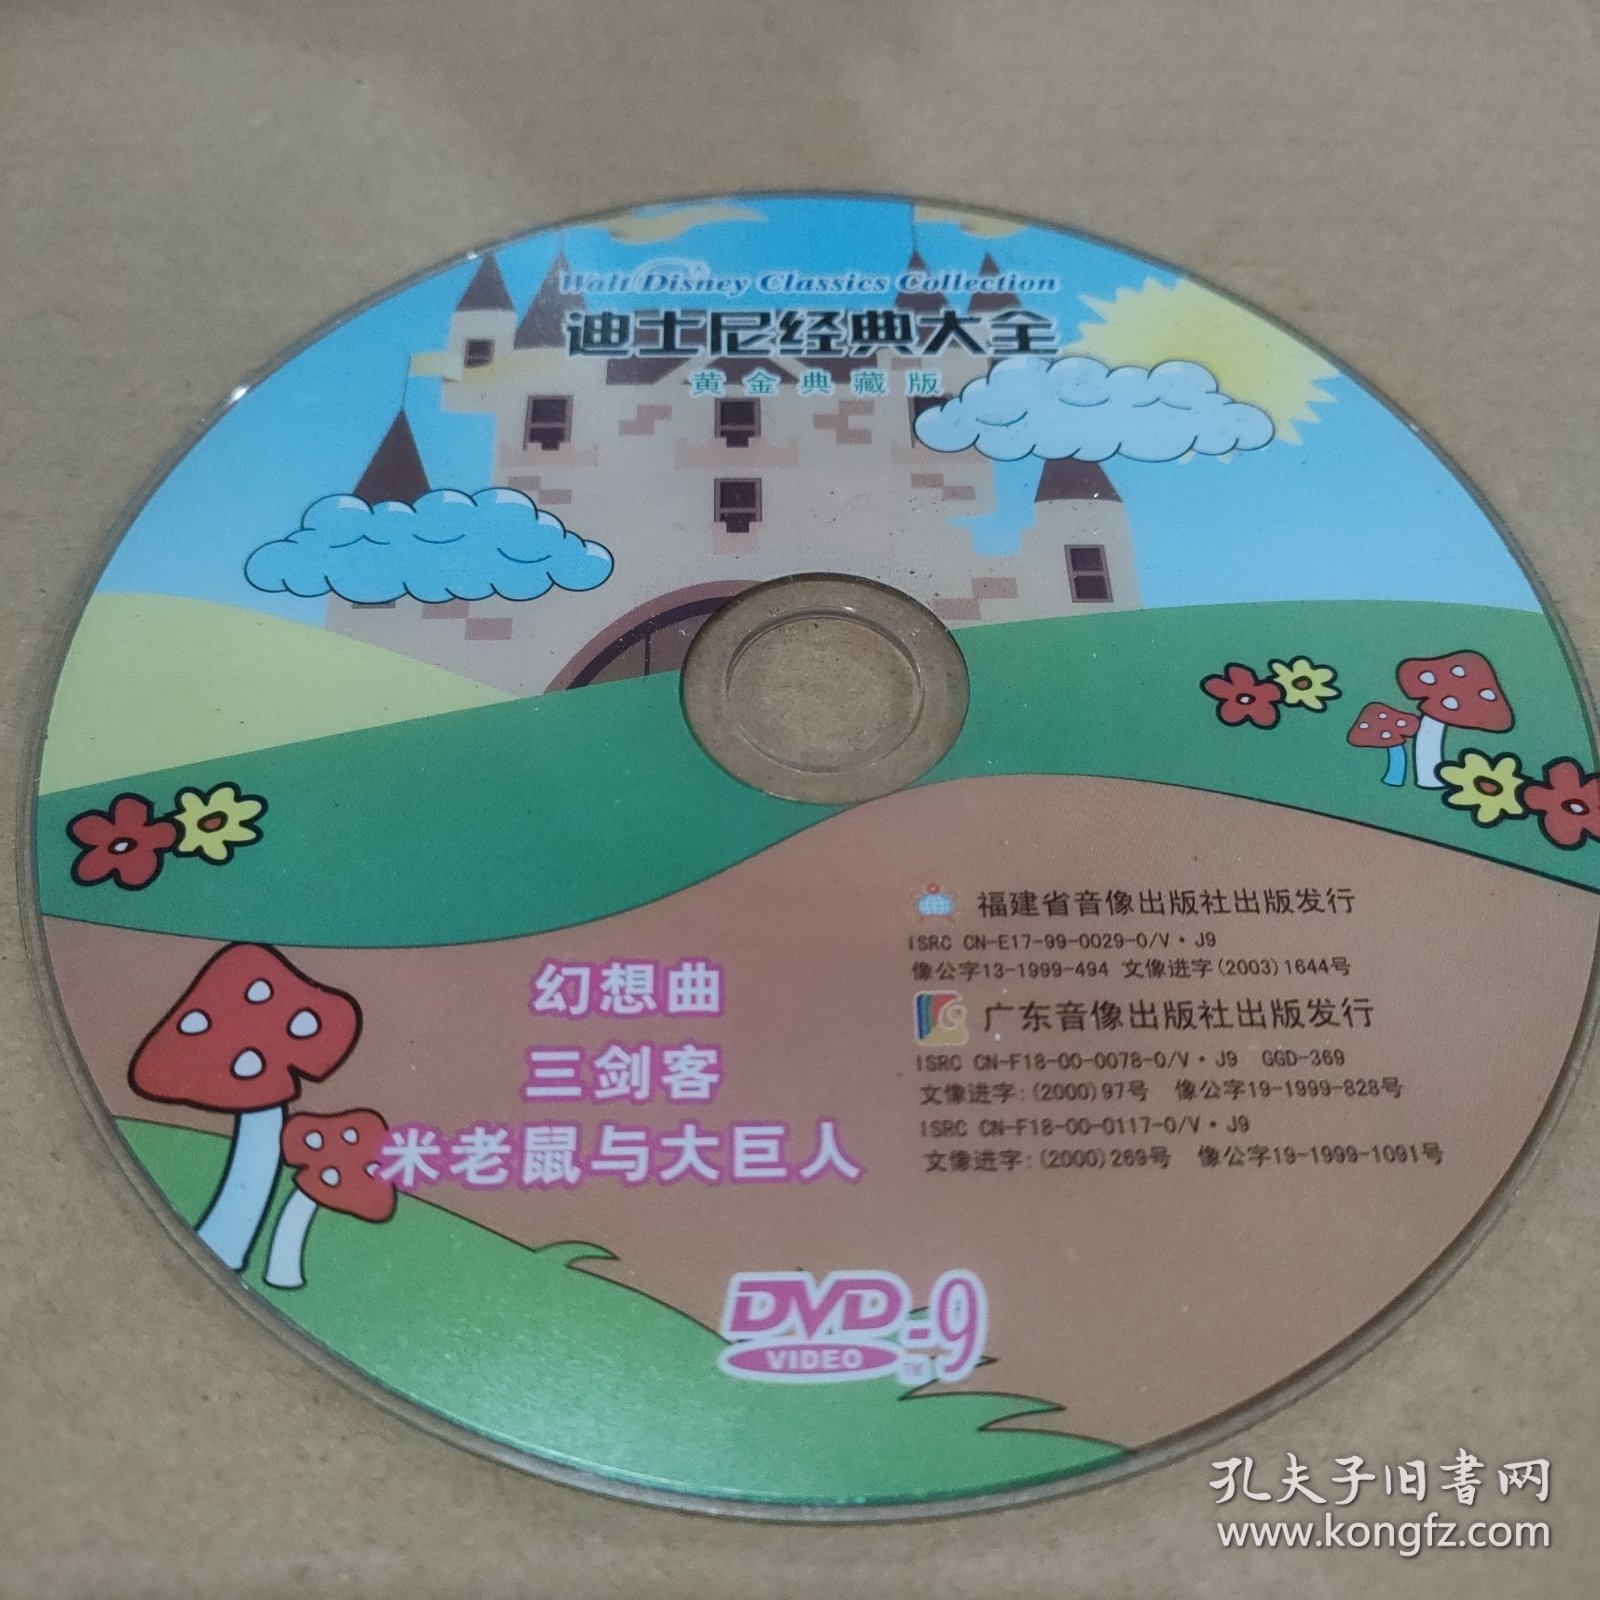 CD VCD DVD MP3 游戏光盘 软件 碟片:迪士尼经典大全 三剑客 幻想曲 米老鼠与大巨人（黄金典藏版）～～多单合并一单 裸碟1张 多单合并运费 裸碟筒装货号